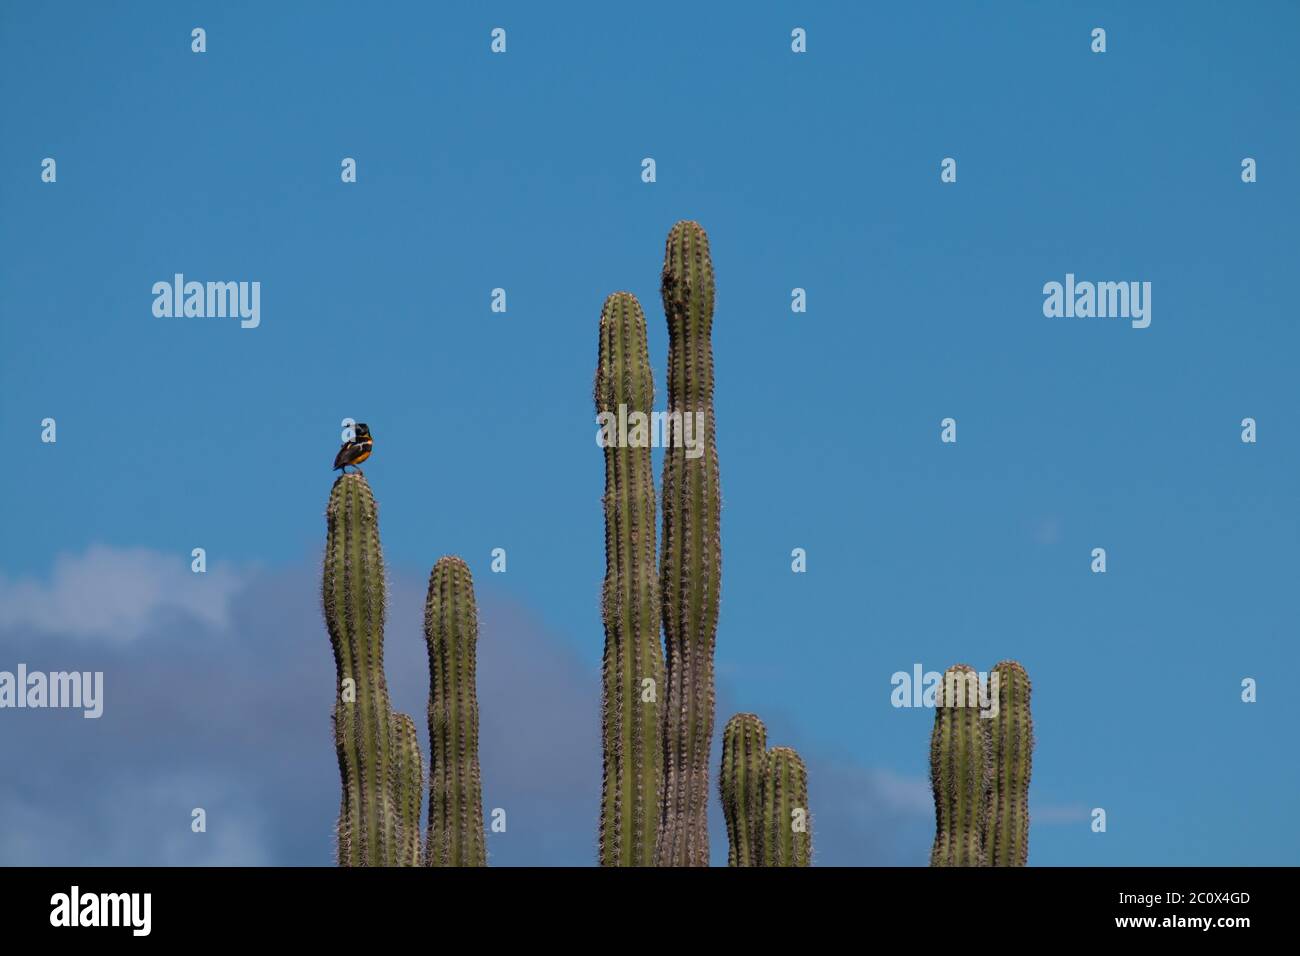 Venezuelan troupial (Icterus icterus) standing on a giant club cactus (Cereus repandus) Stock Photo